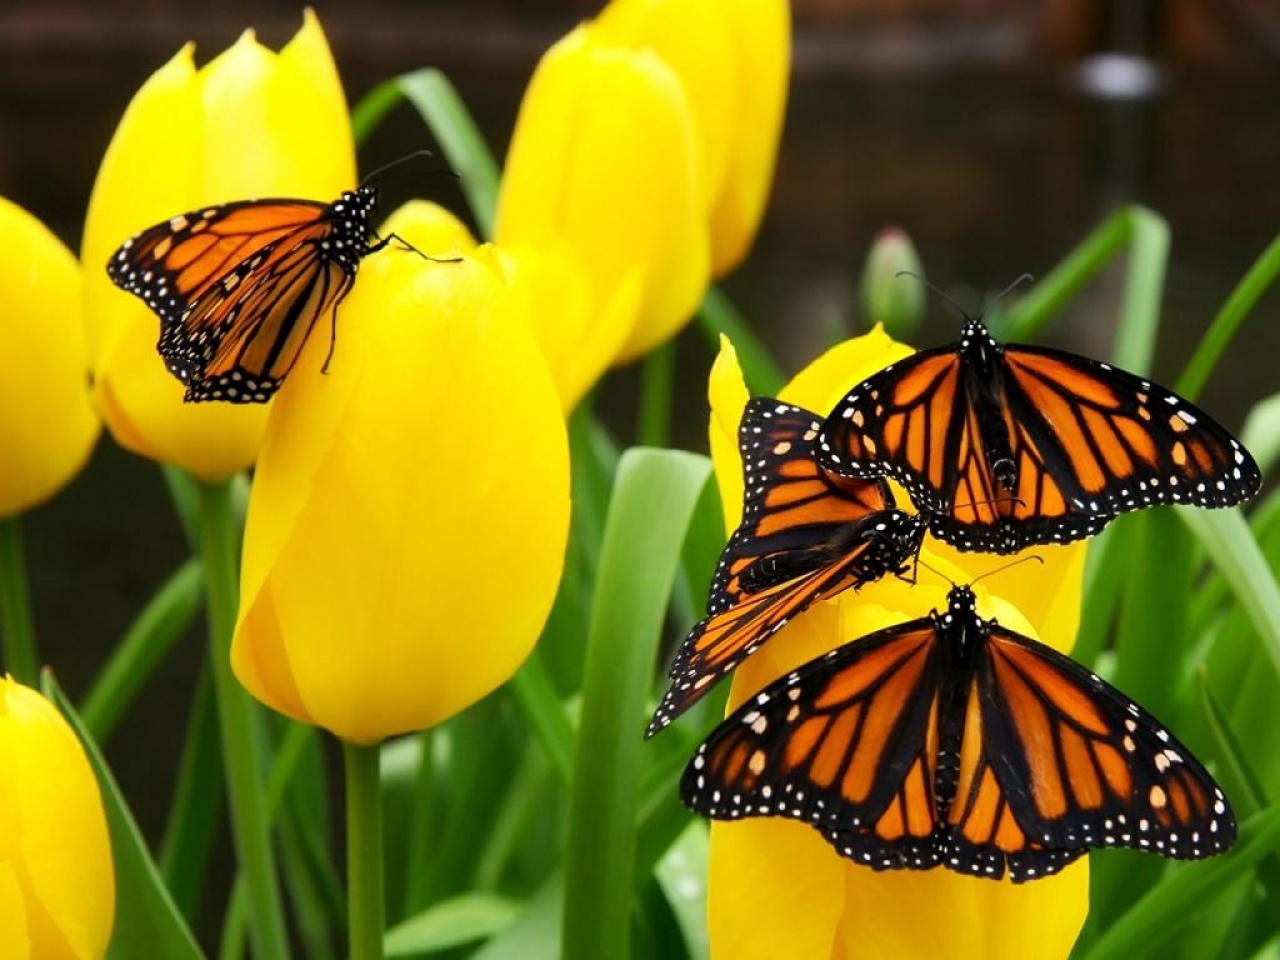  Mariposa monarca, un referente para medir el cambio climático